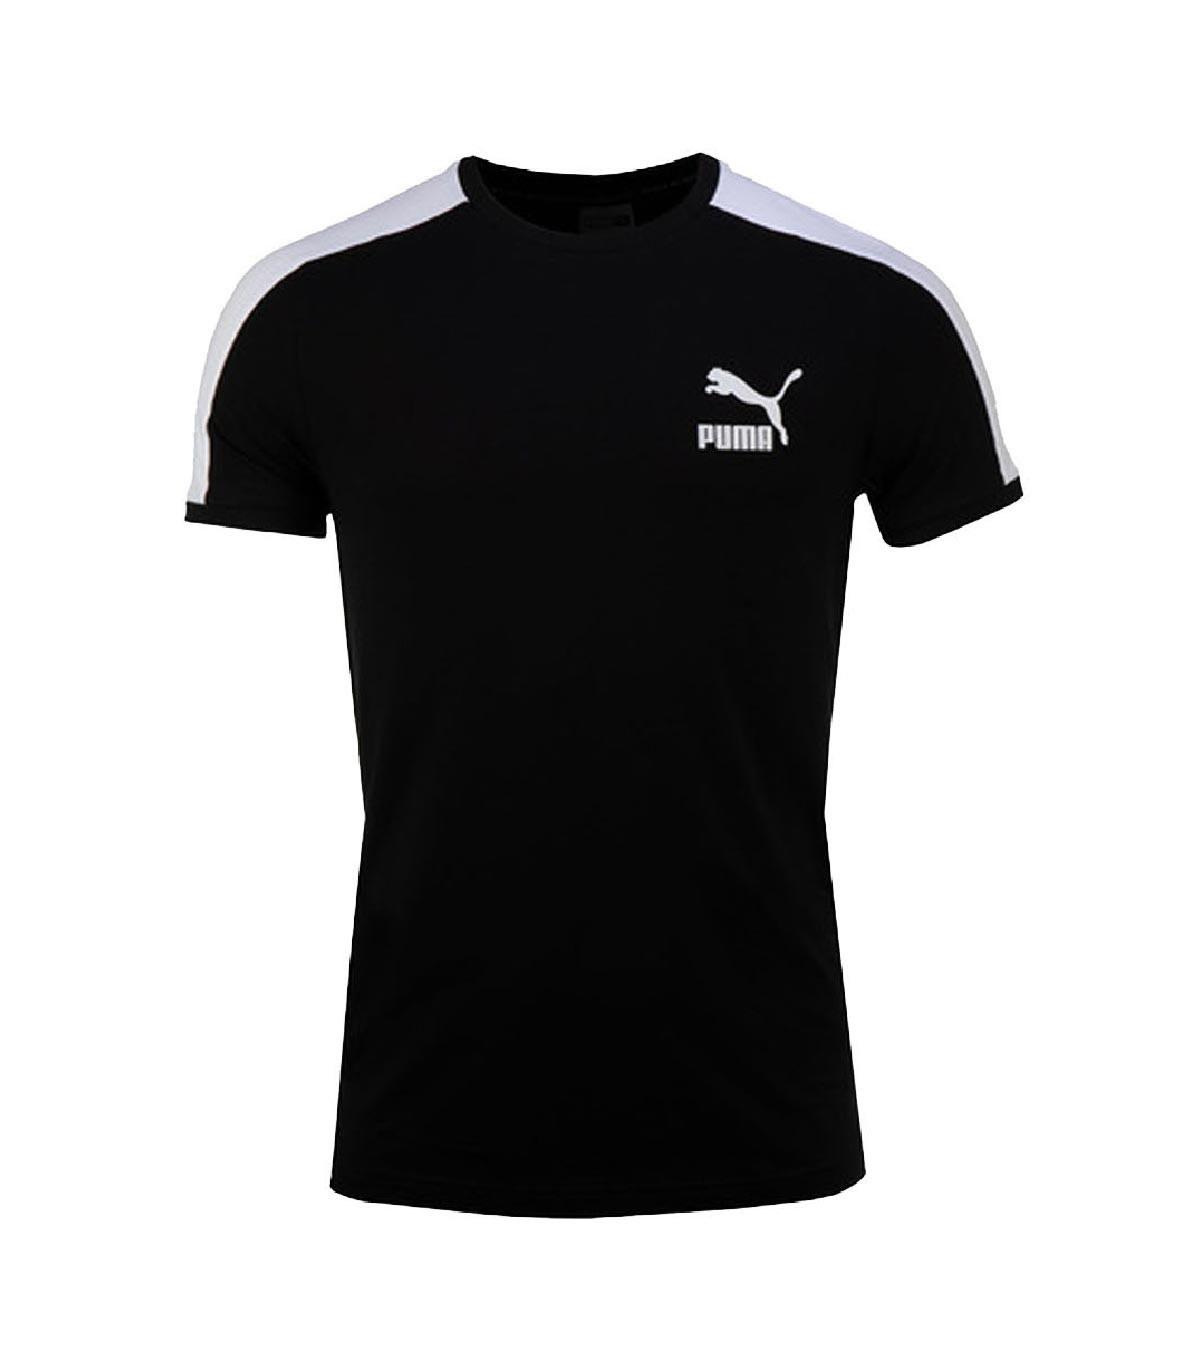 Puma - Camiseta Ionic T7 - Negro